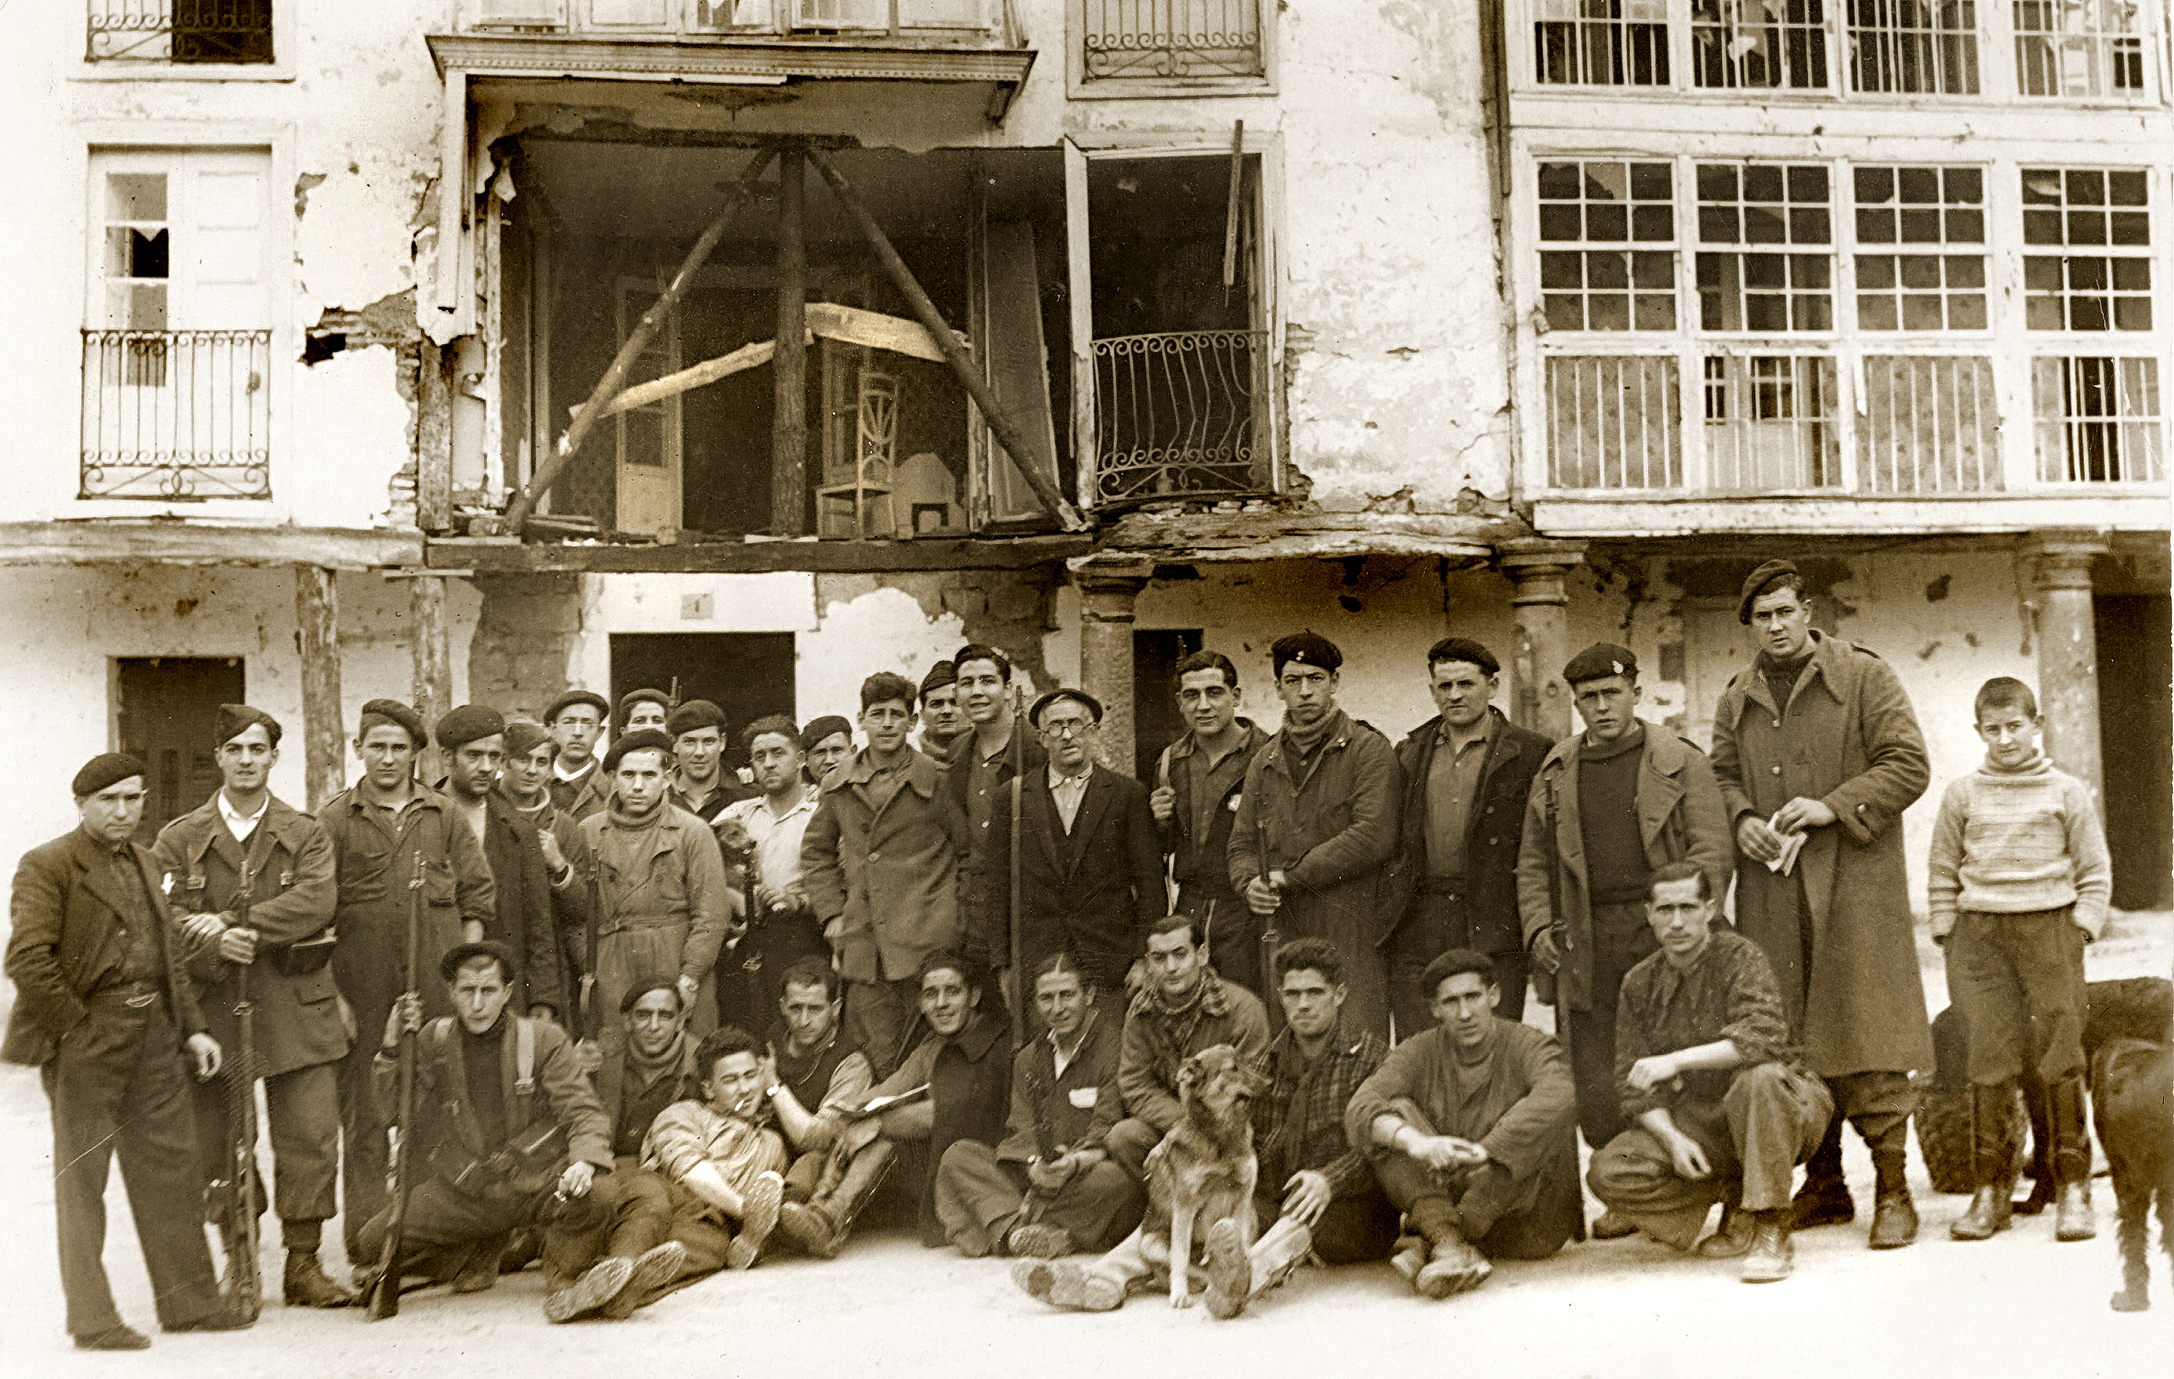 Milițieni și gudaris în piața bombardată, în fața Elgetei, în anul 1937, înainte de a fi luată de trupele franchiste. Războiul civil spaniol.